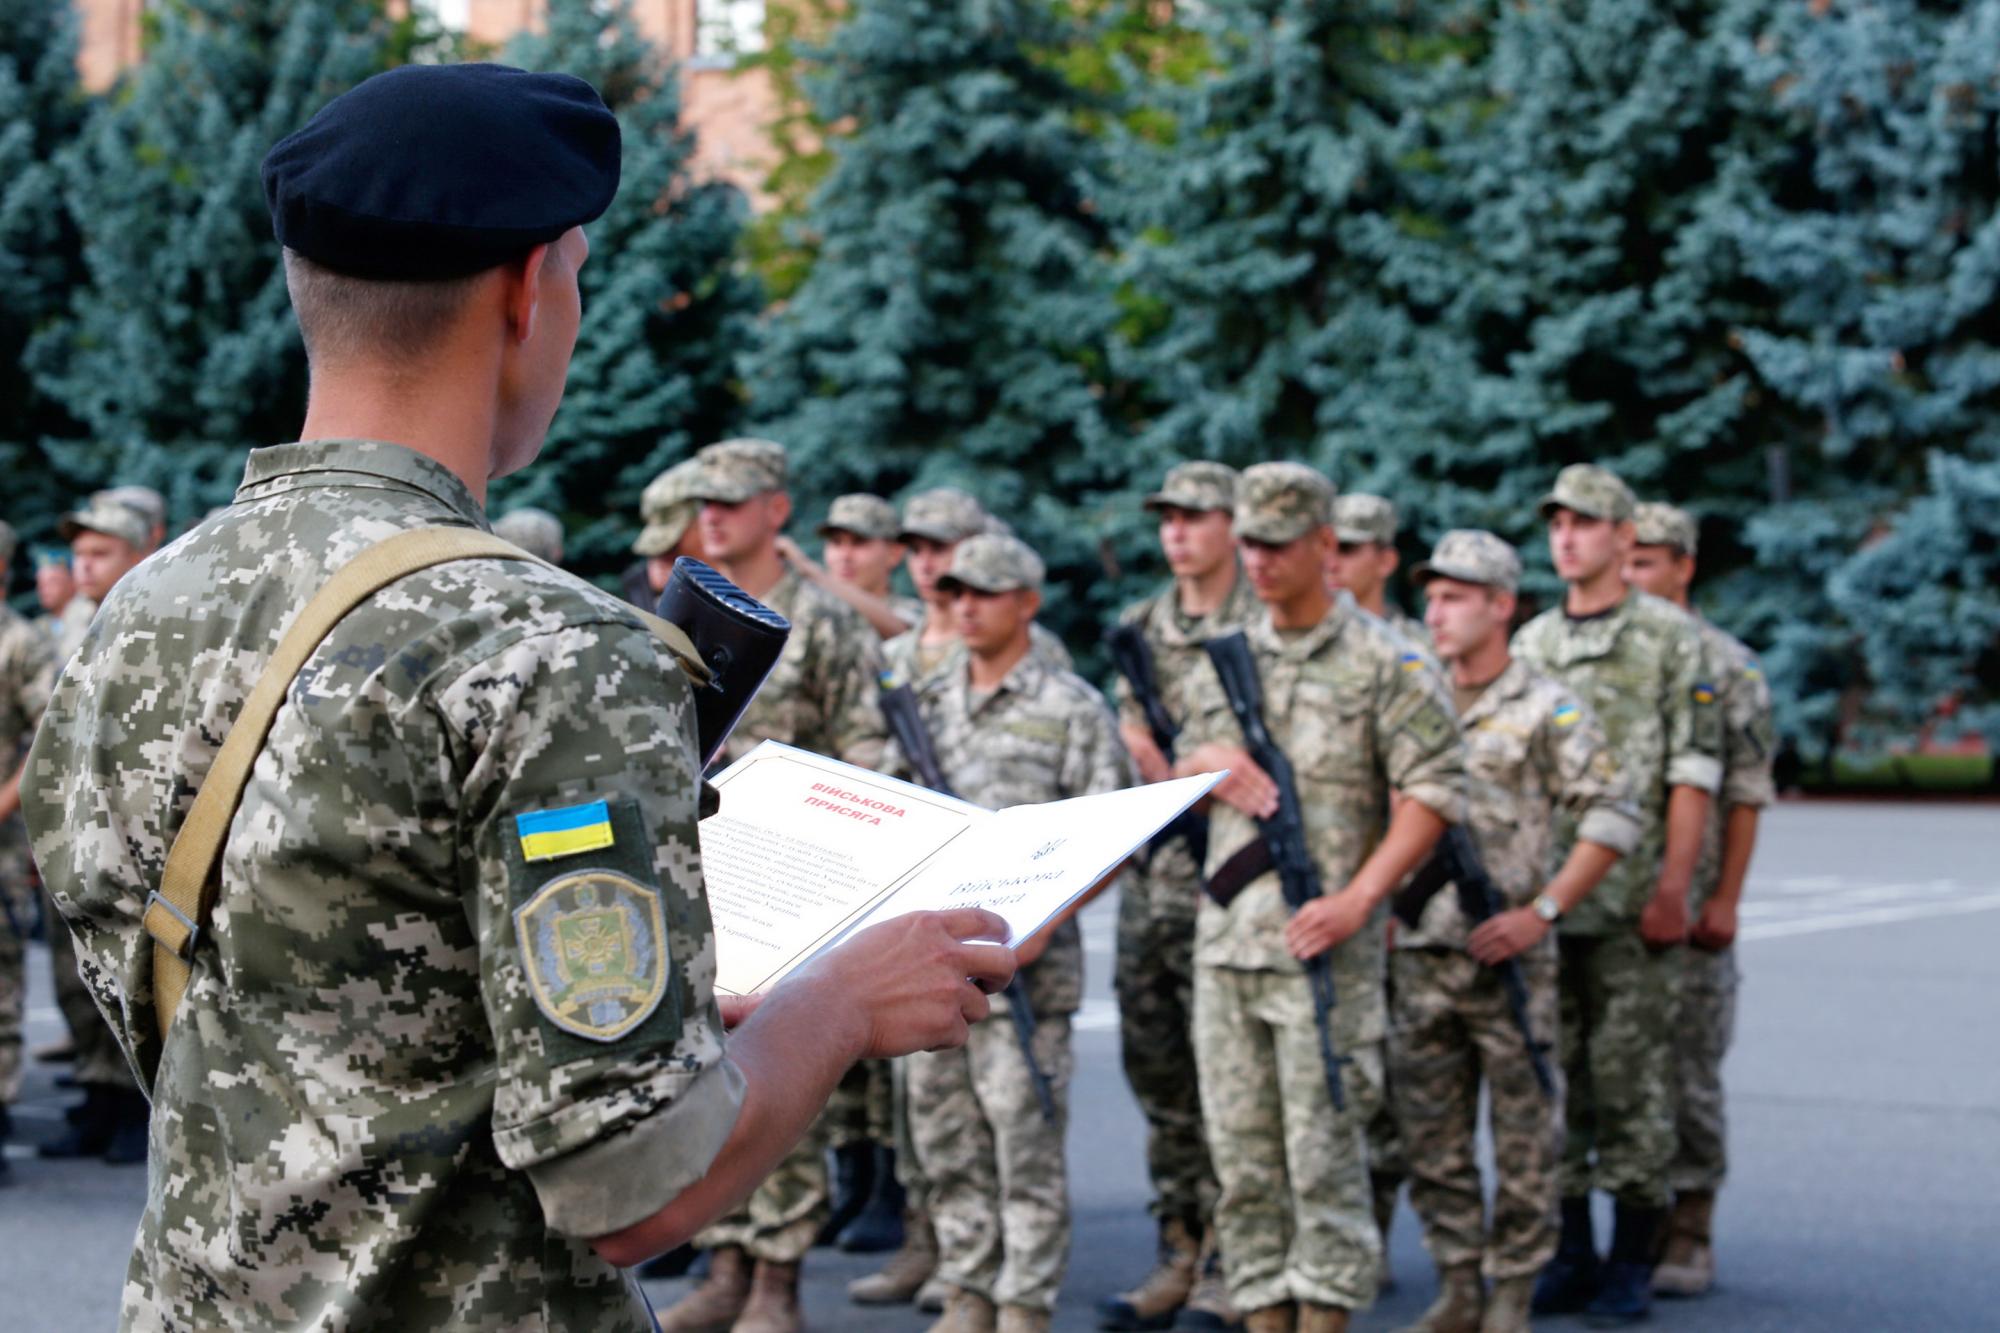 Не «прапорщик», а «штаб-сержант». В Украине изменили воинские звания